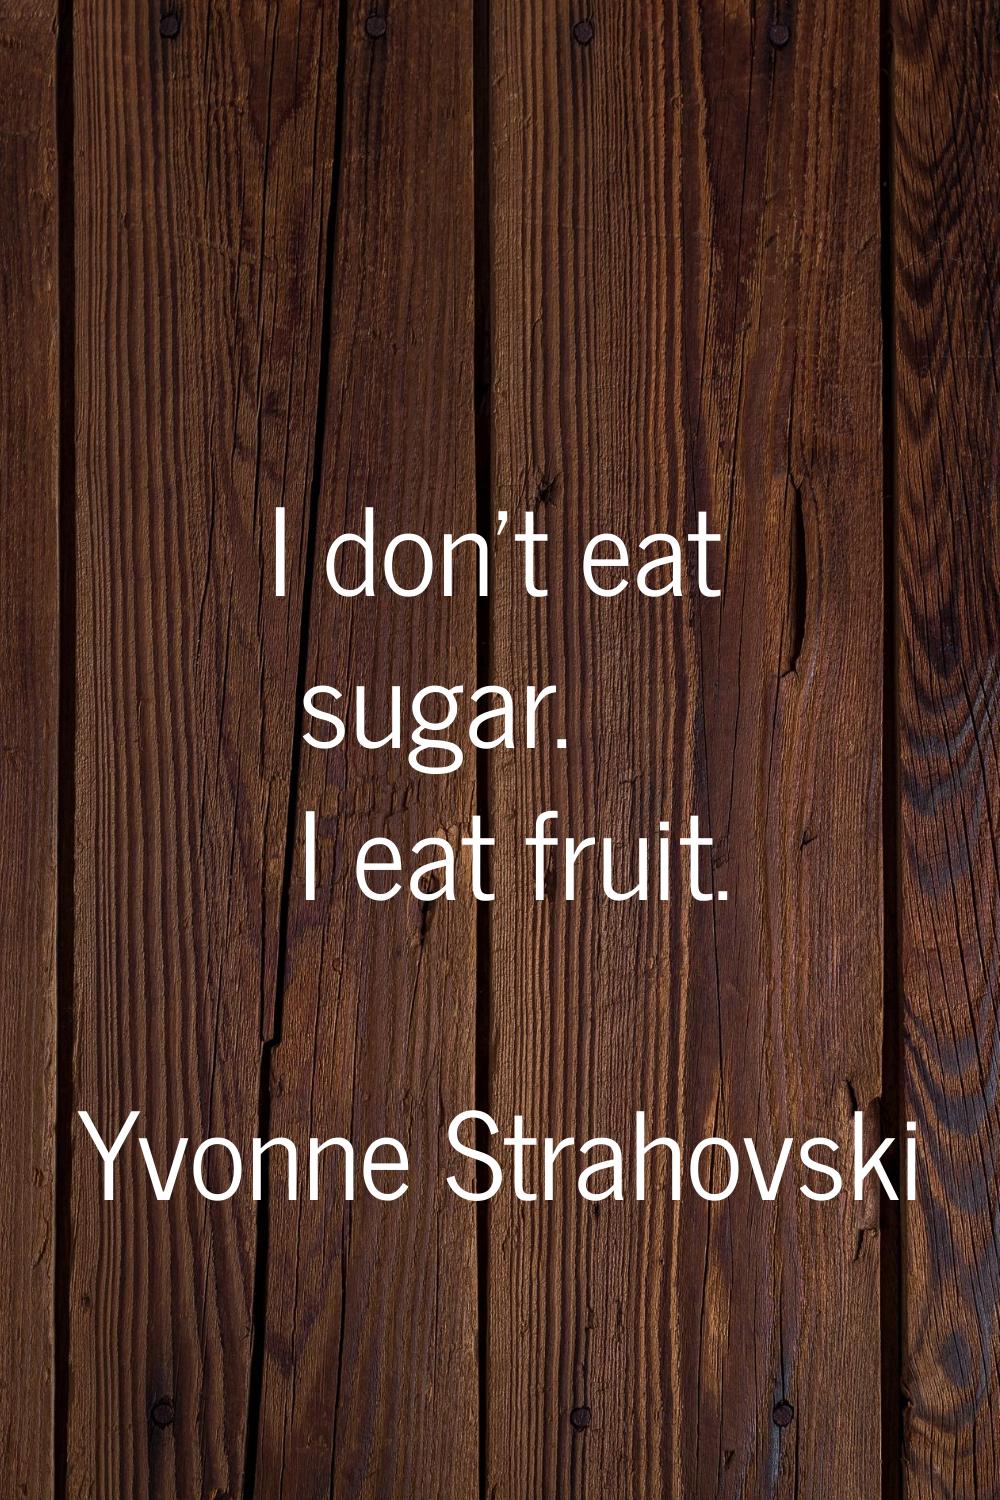 I don't eat sugar. I eat fruit.